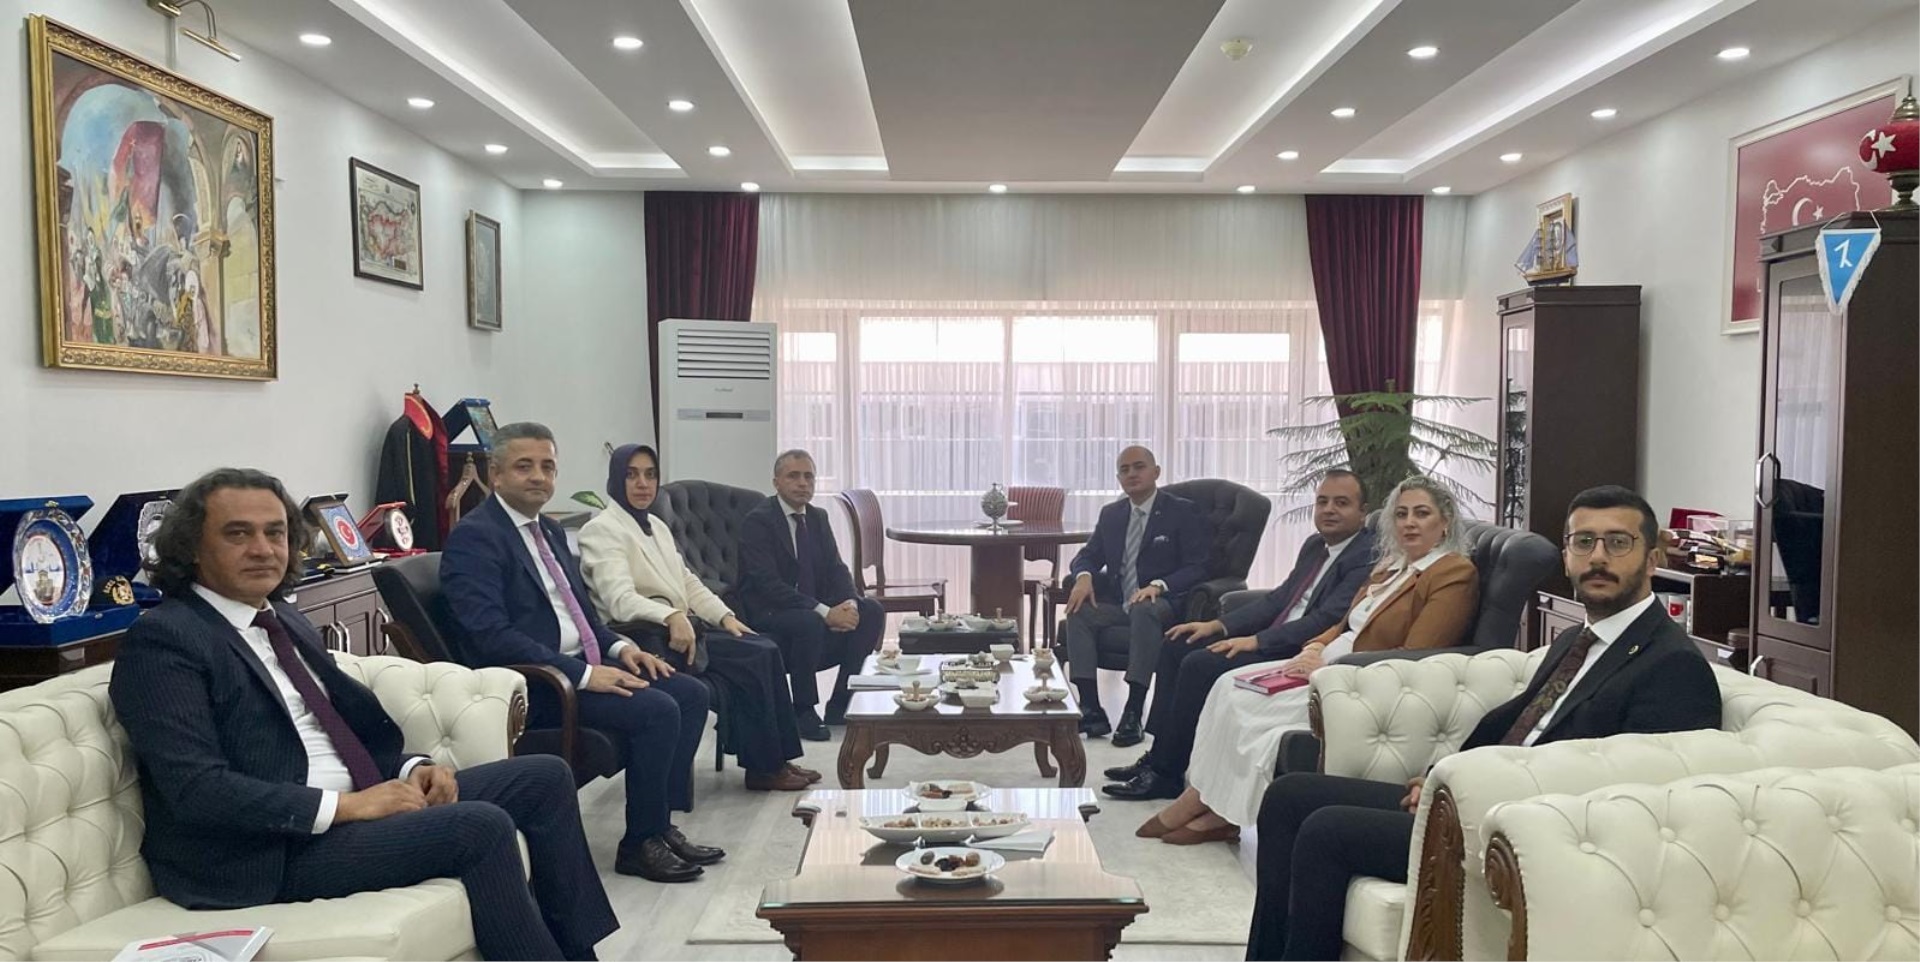 Osmaniye Belediye Başkanı İbrahim ÇENET, Osmaniye Cumhuriyet Başsavcısı Uygur Kaan ARISOY'u Ziyaret Etti